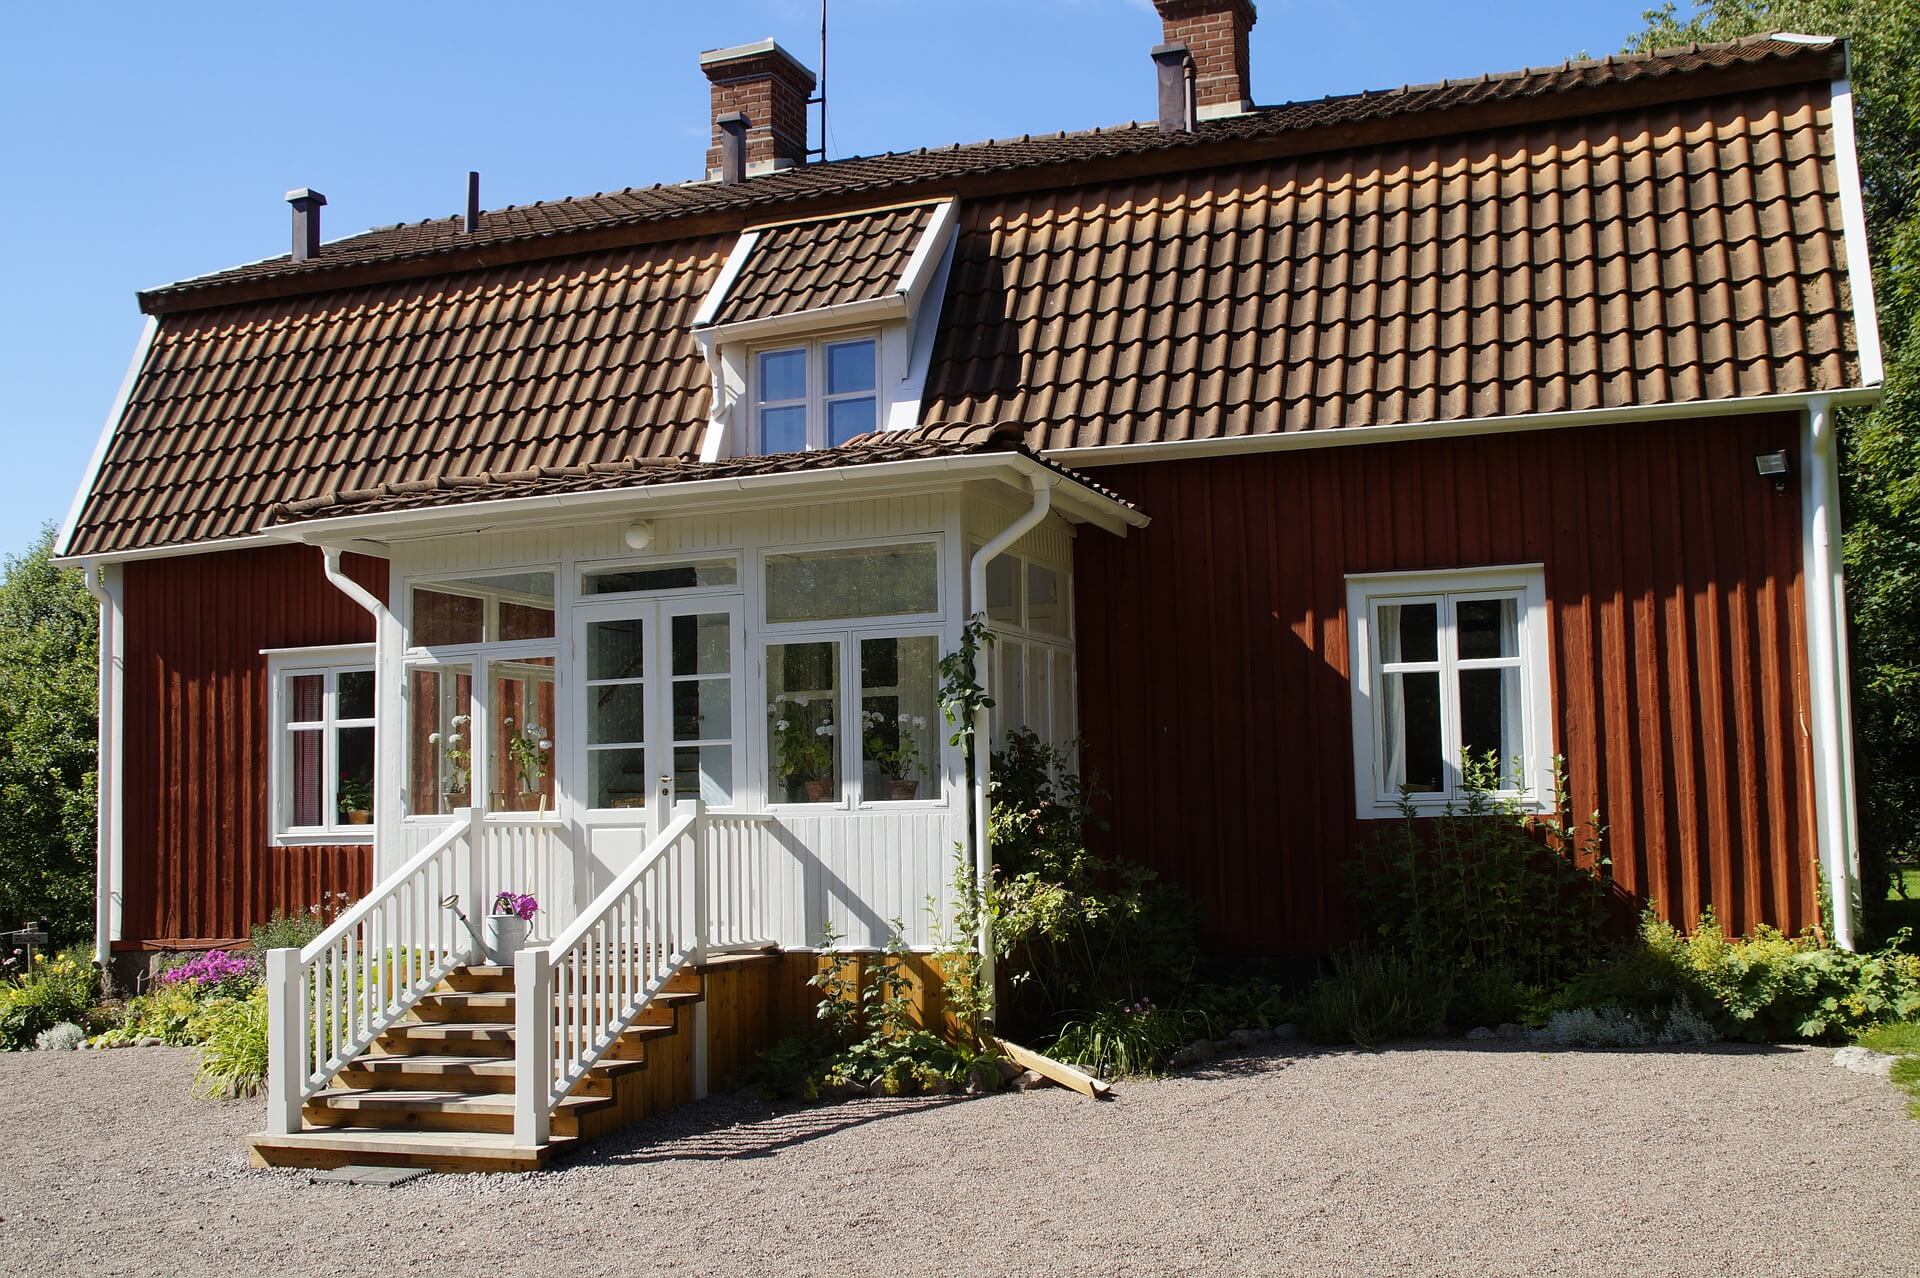 Vimmerby: Astrid Lindgren Museum